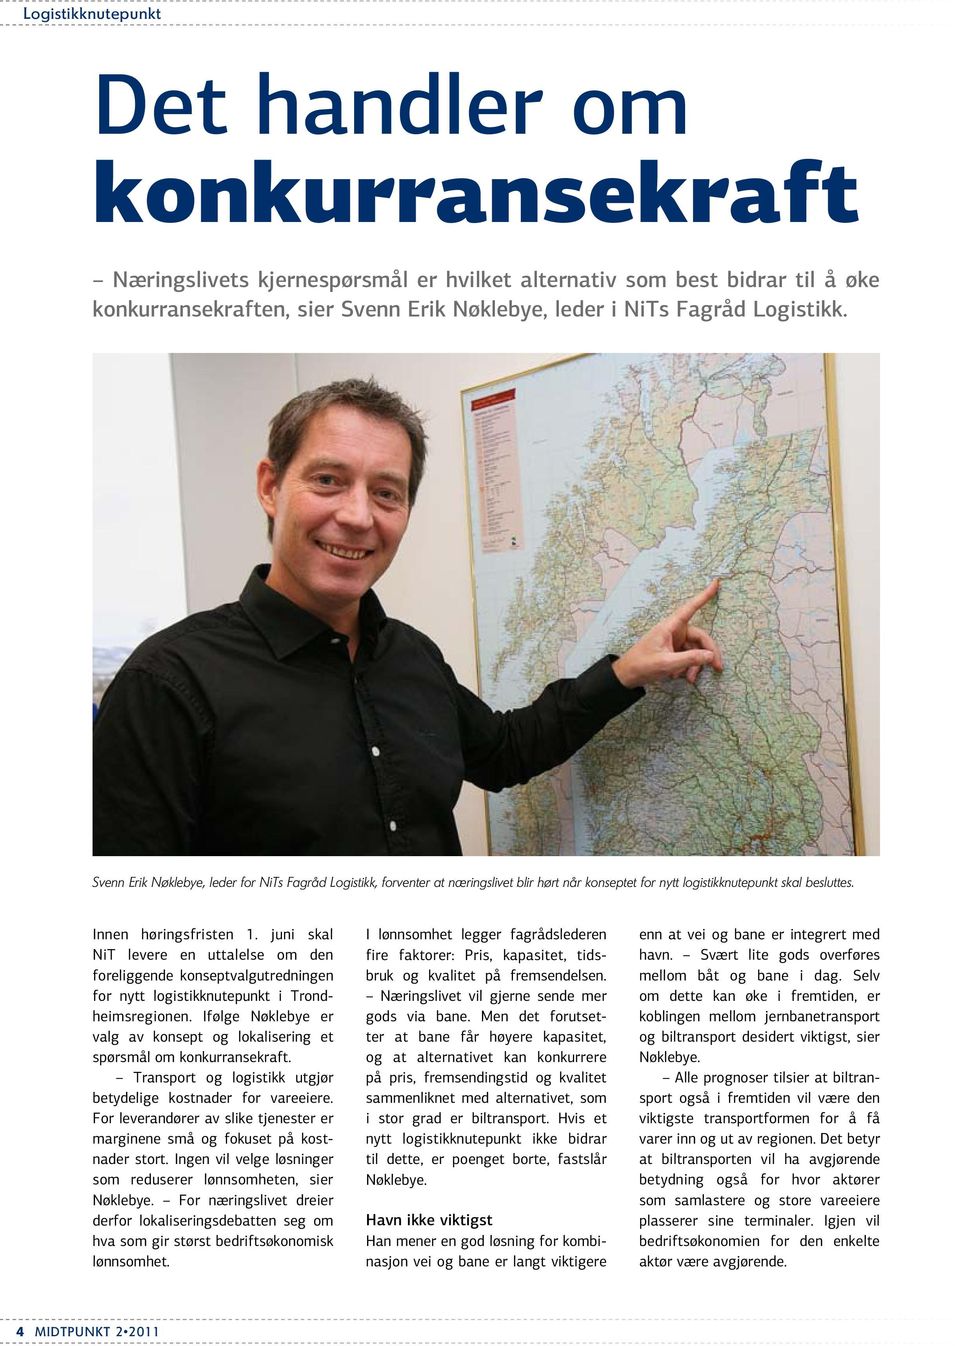 juni skal NiT levere en uttalelse om den foreliggende konseptvalgutredningen for nytt logistikknutepunkt i Trondheims regionen.